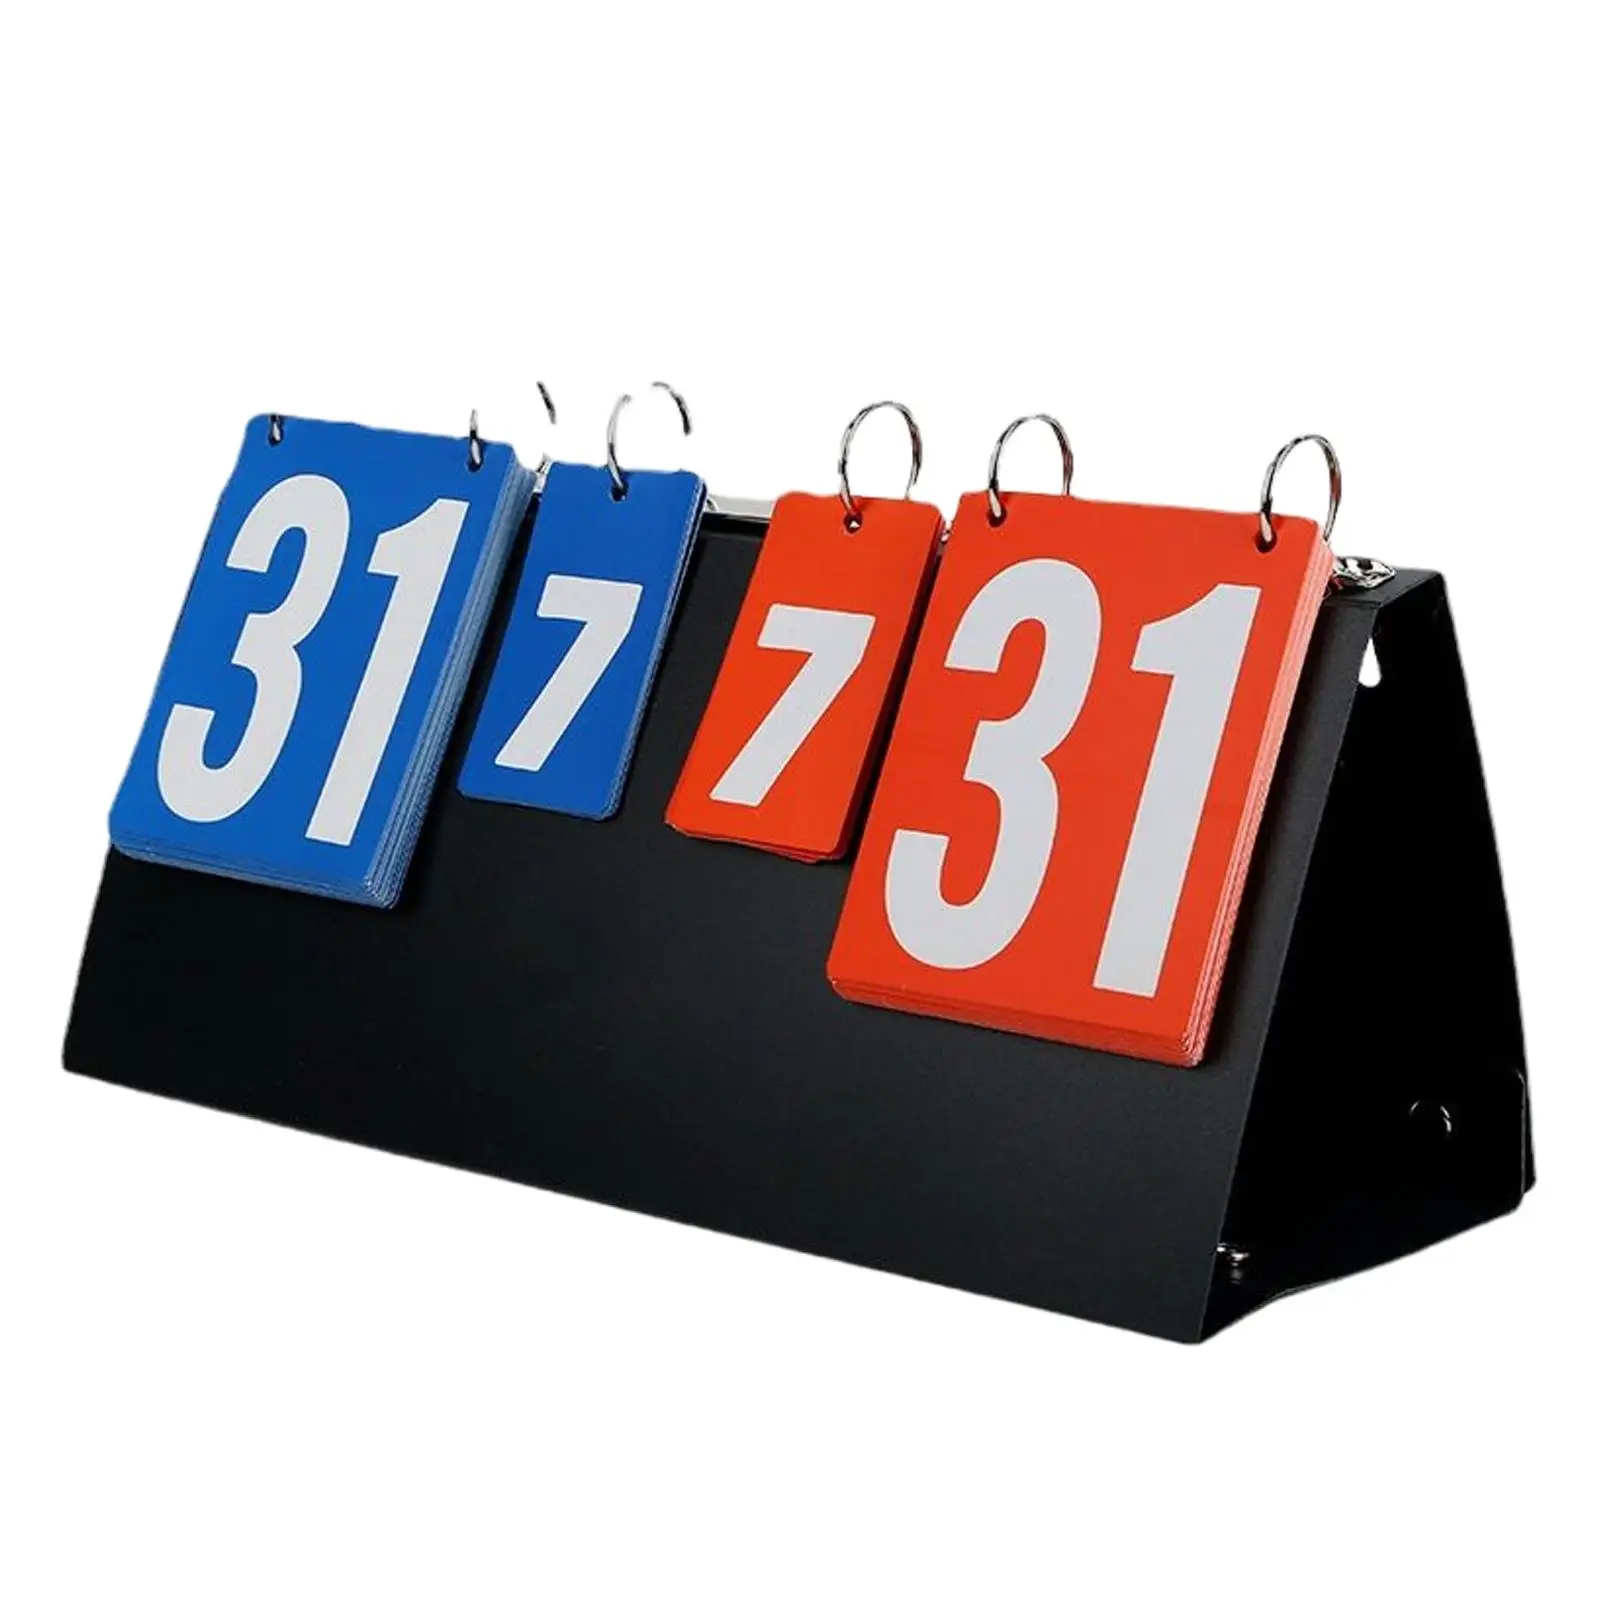 4 digits Score Board Score Keeper Competition Tabletop Scoreboard for Basketball